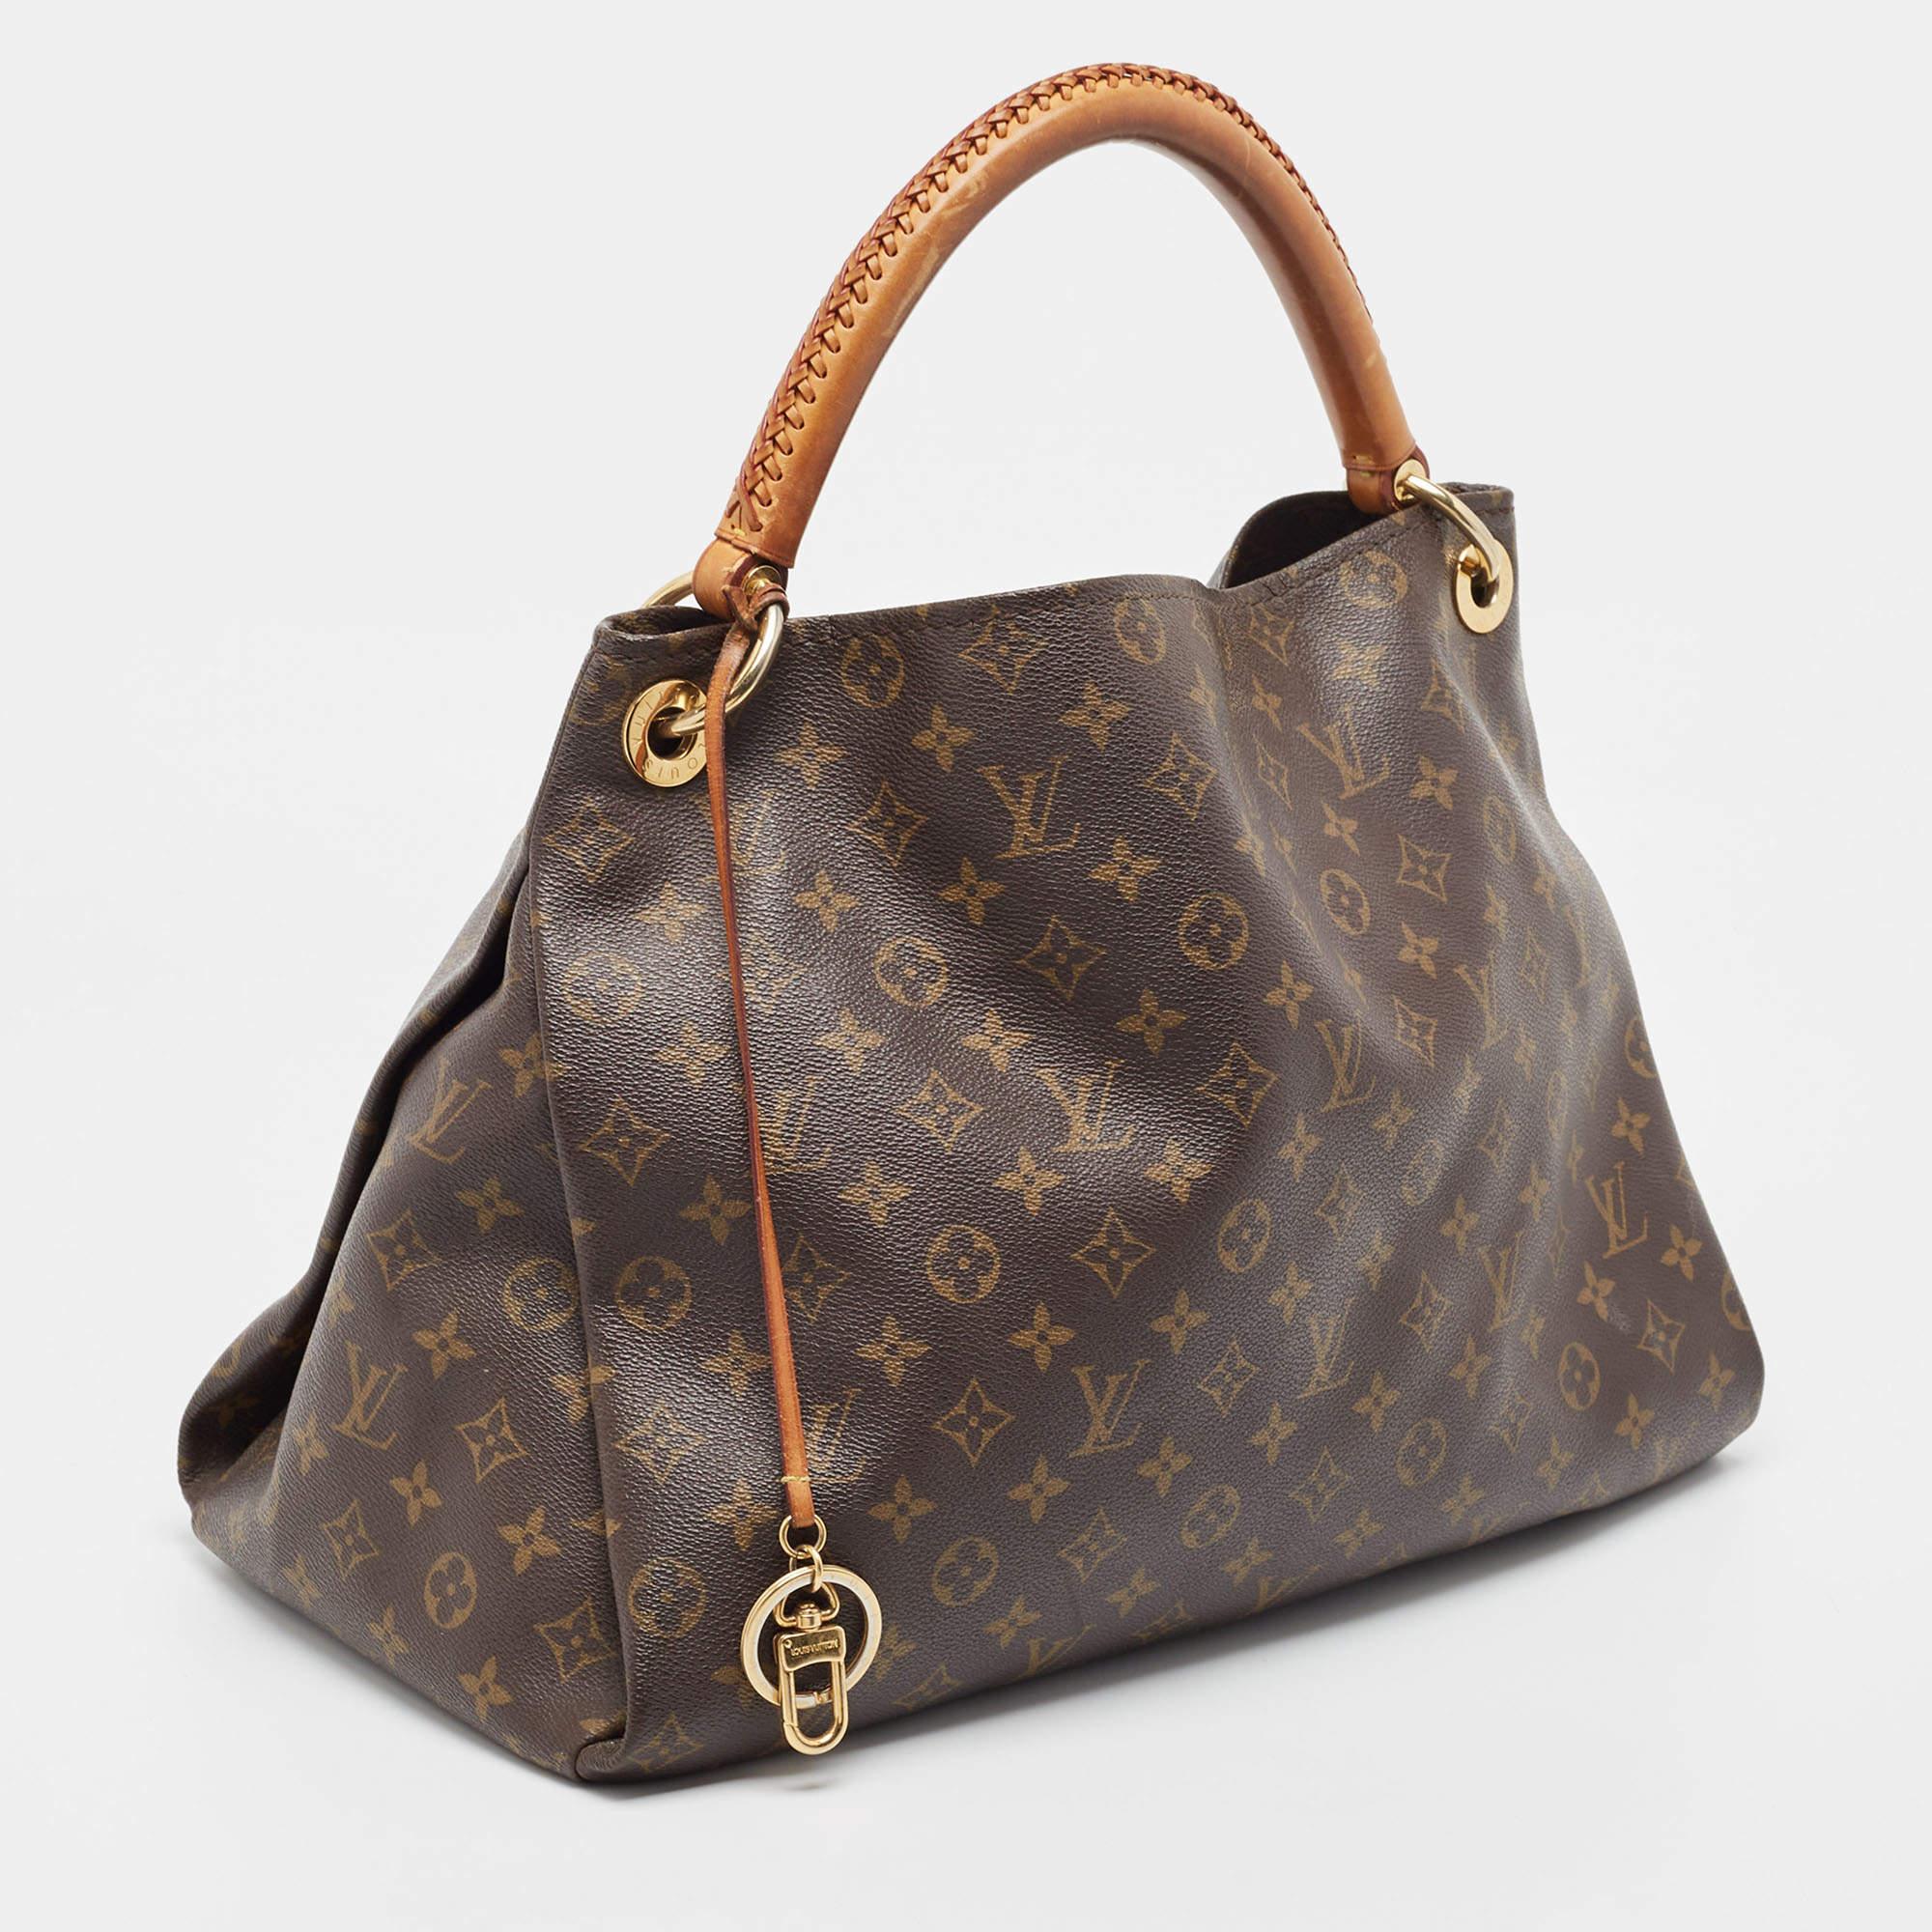 Louis Vuitton Monogram Canvas Artsy MM Bag In Good Condition For Sale In Dubai, Al Qouz 2